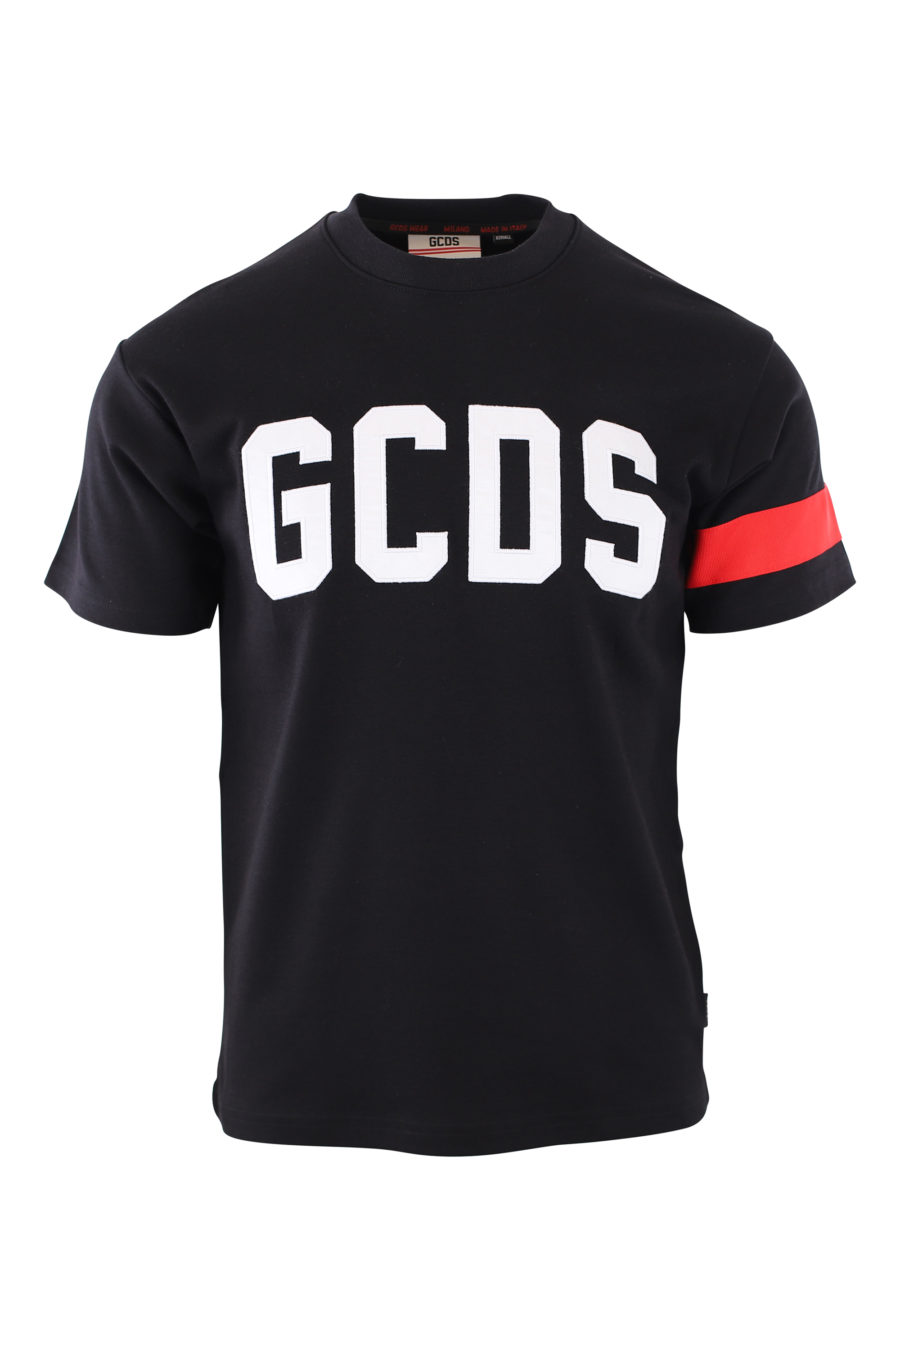 Camiseta negra con logo blanco bordado y detalle rojo en manga - IMG 2099